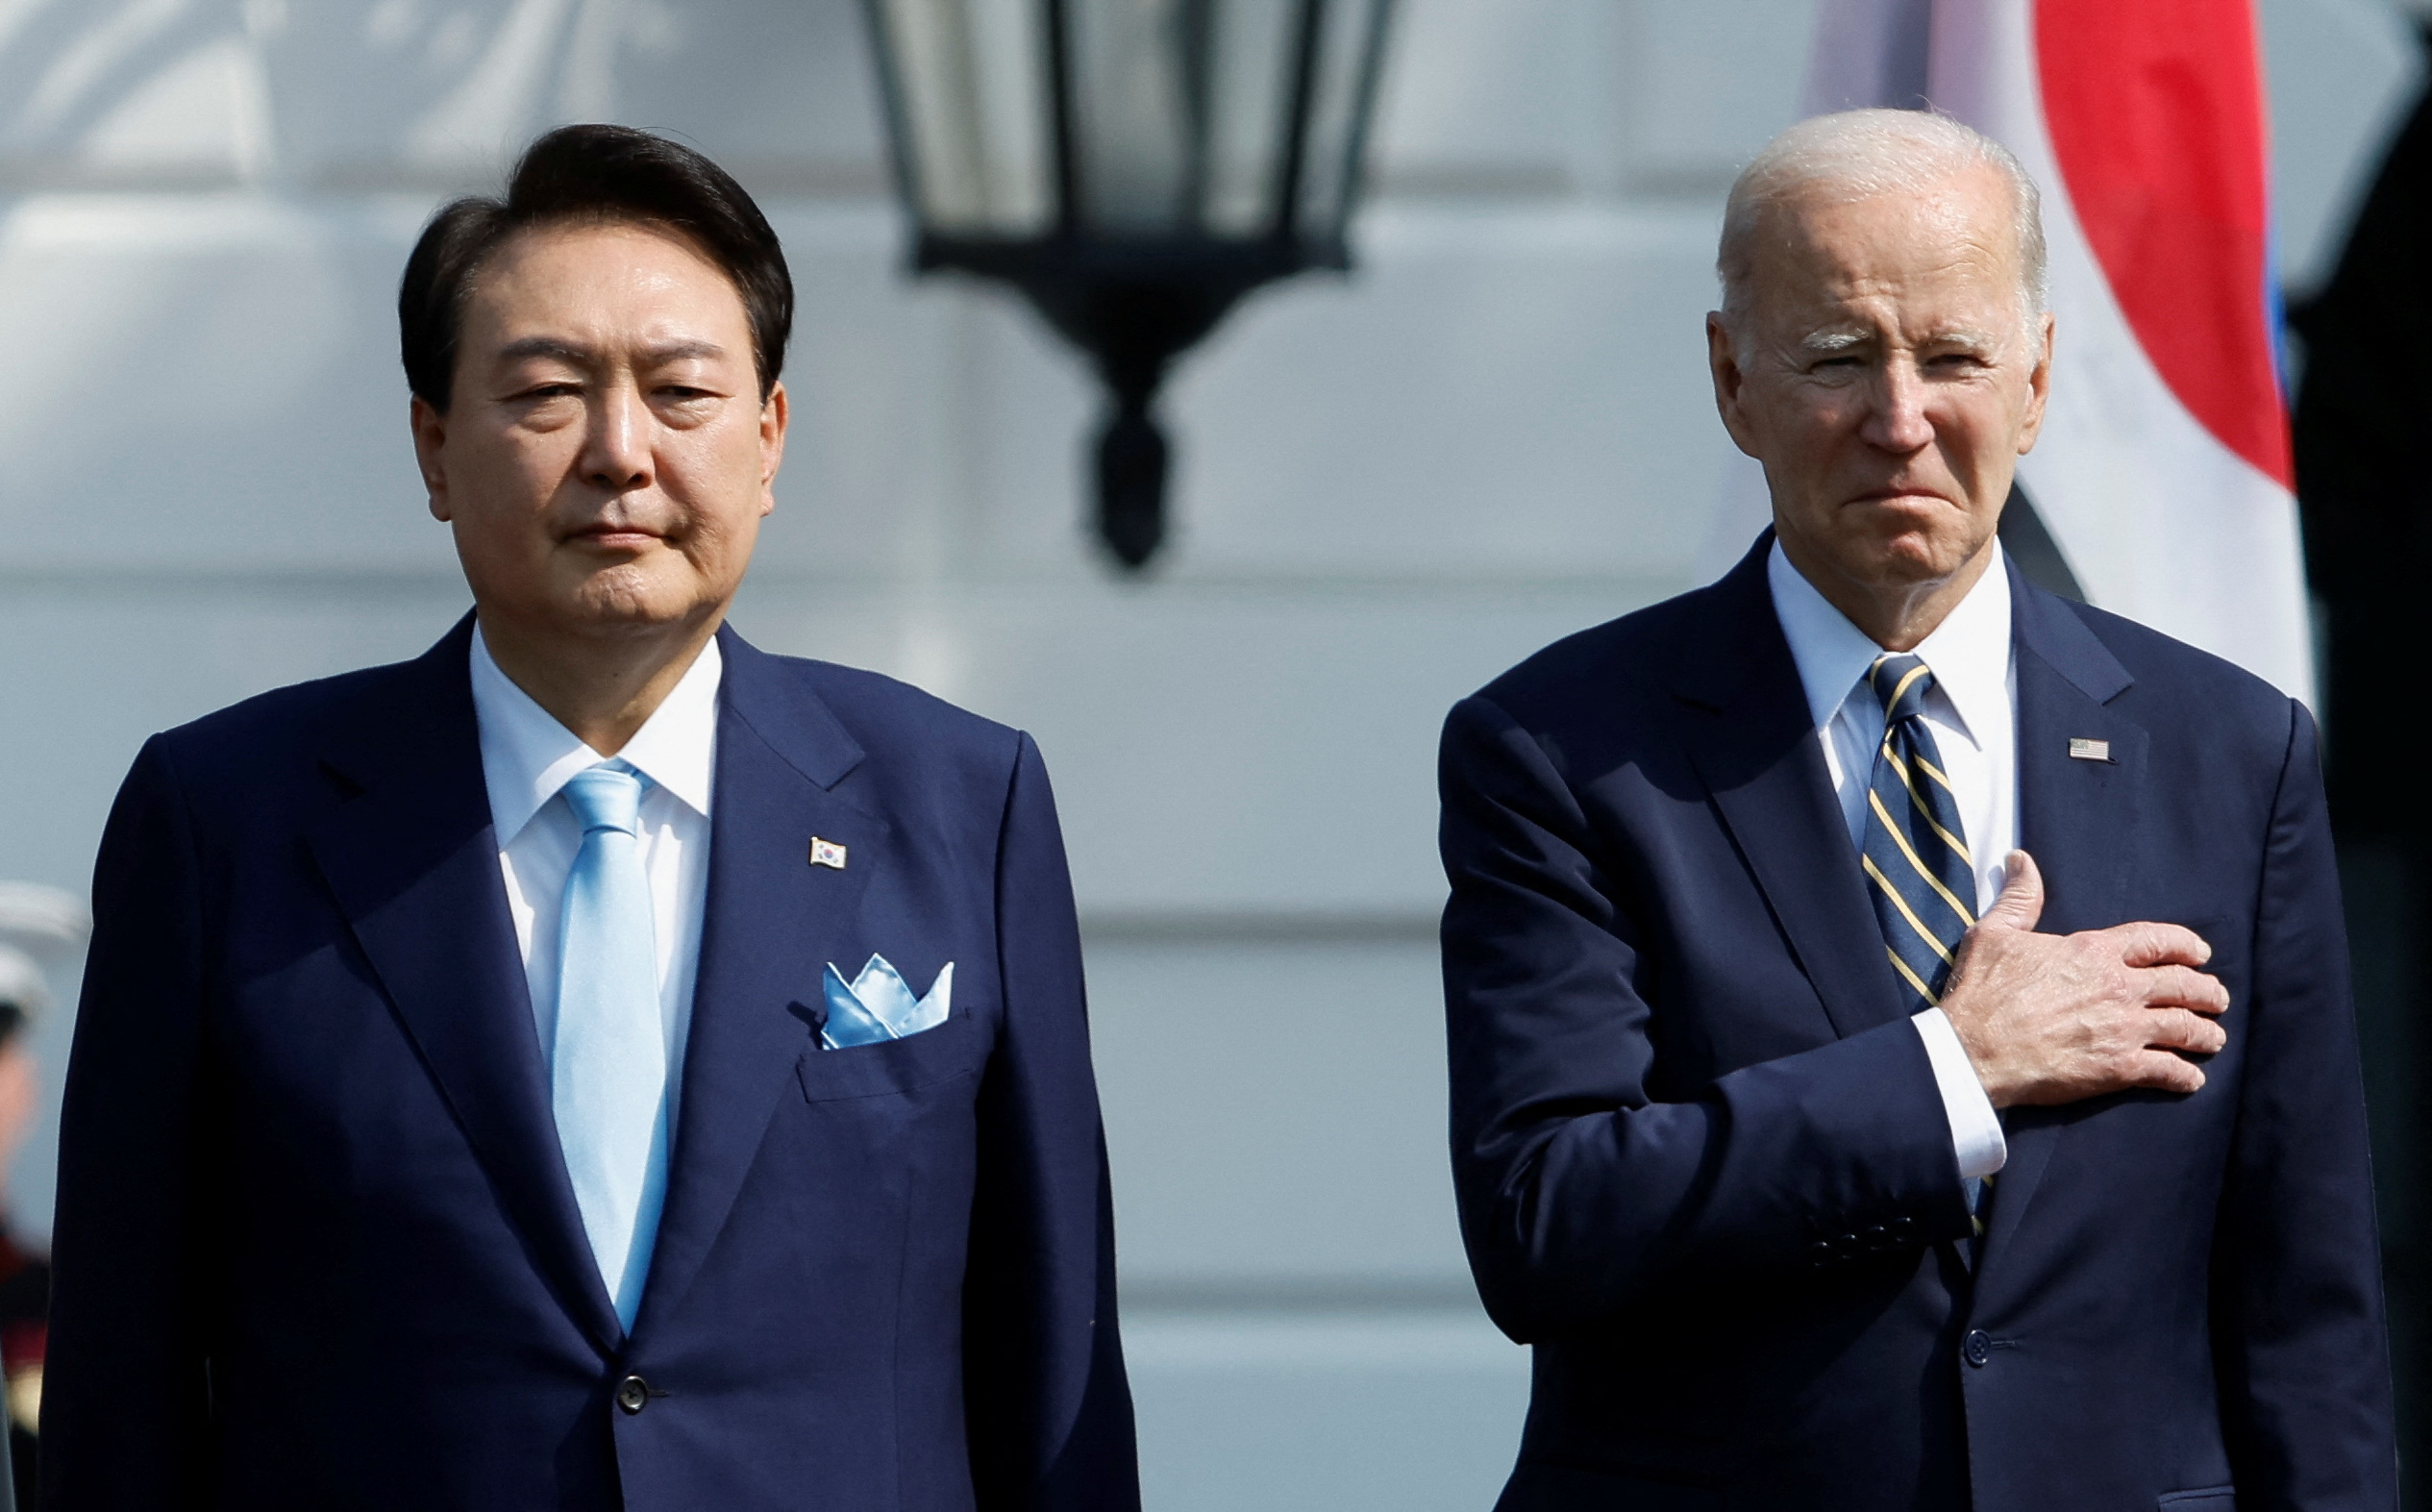 El presidente de Estados Unidos, Joe Biden, y el presidente de Corea del Sur, Yoon Suk Yeol, juntos en el escenario durante una ceremonia oficial de llegada de Estado a la Casa Blanca en el Jardín Sur de la Casa Blanca en Washington, EE.UU. 26 de abril 2023. REUTERS/Jonathan Ernst